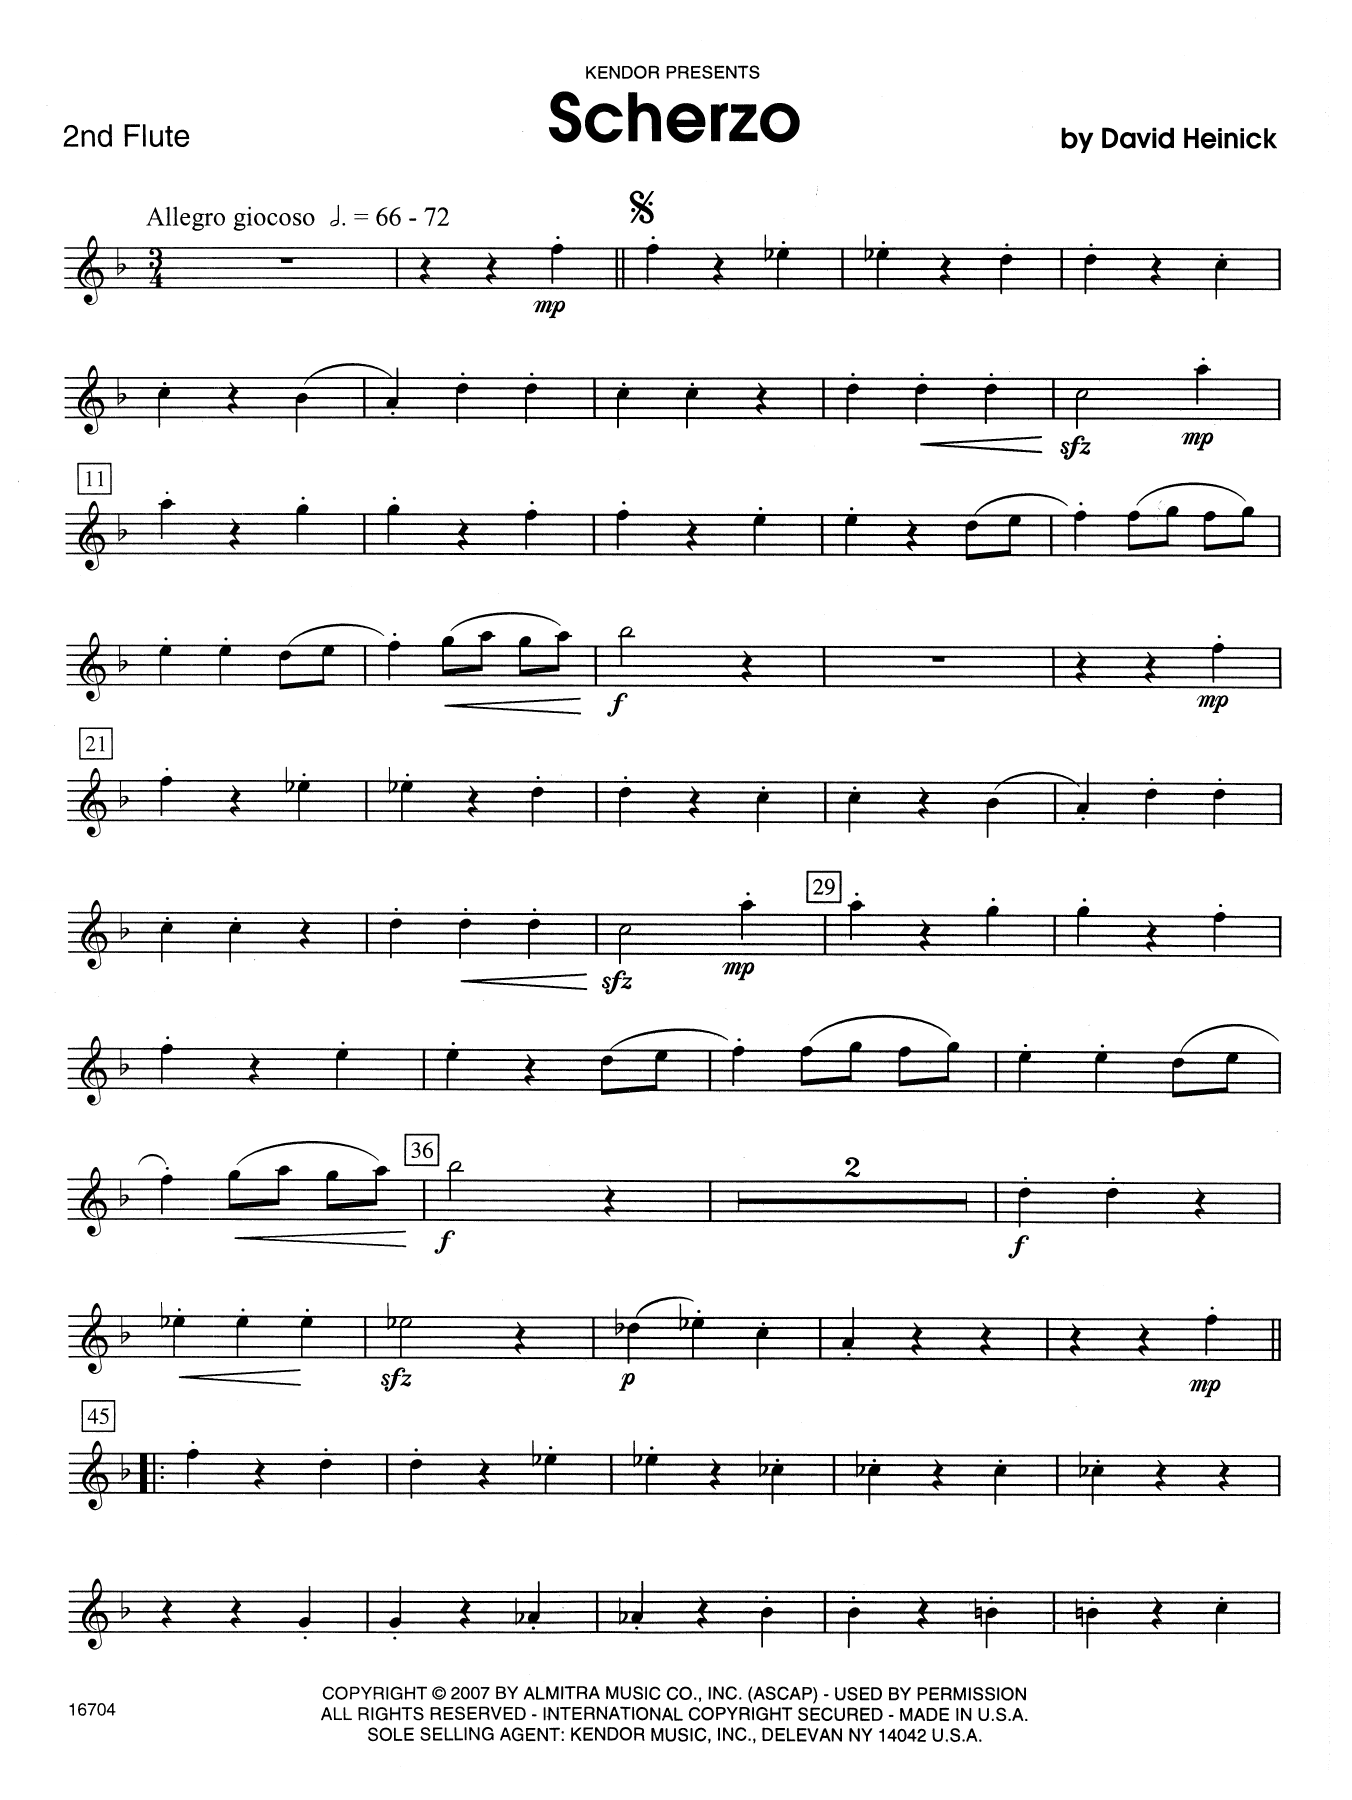 Download David Heinick Scherzo - 2nd Flute Sheet Music